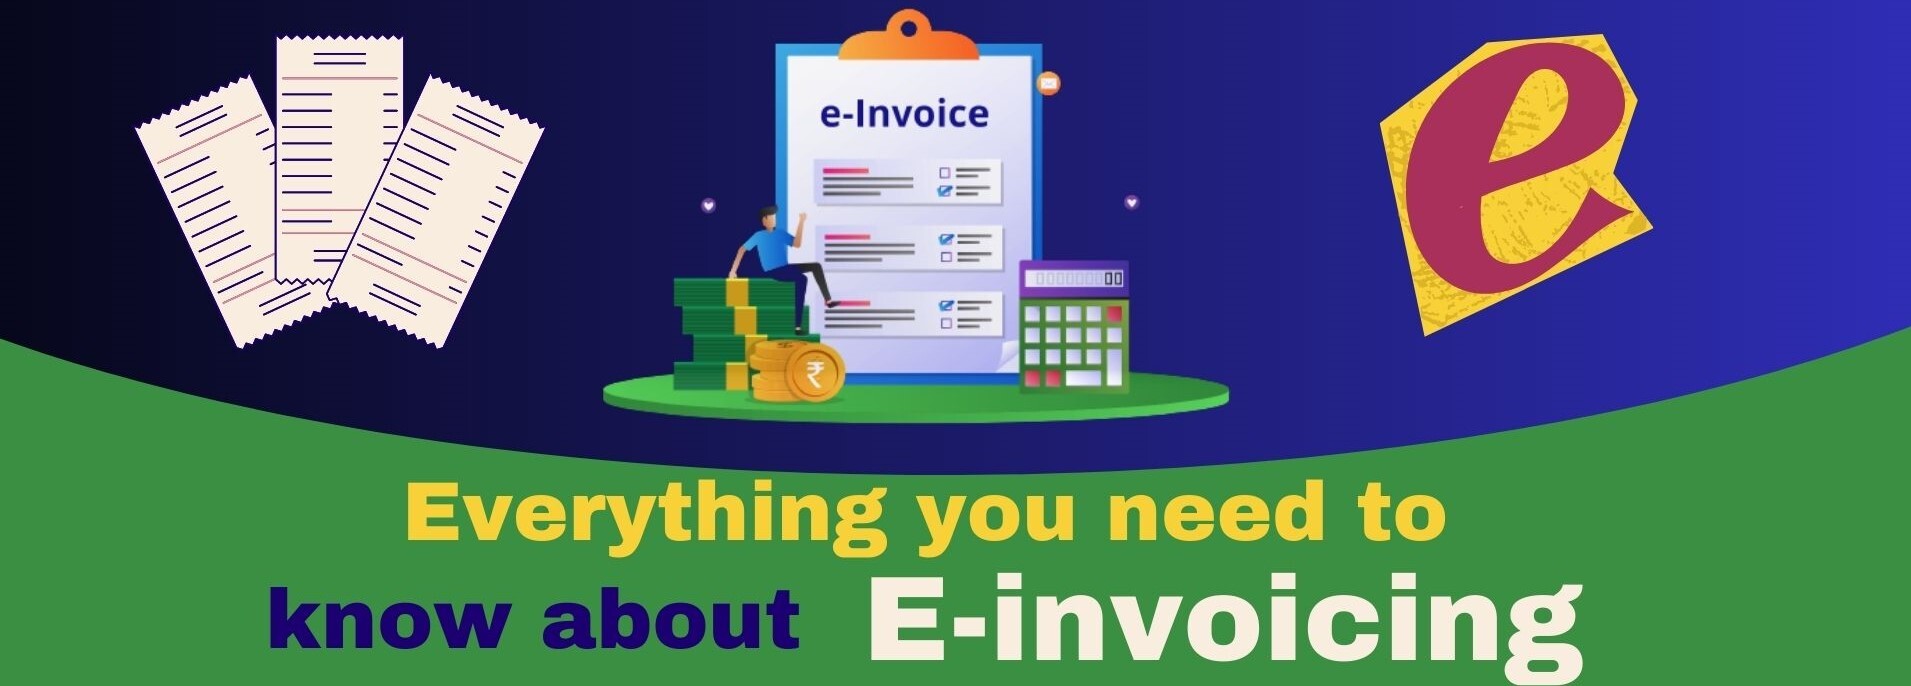 e-invoicing_banner